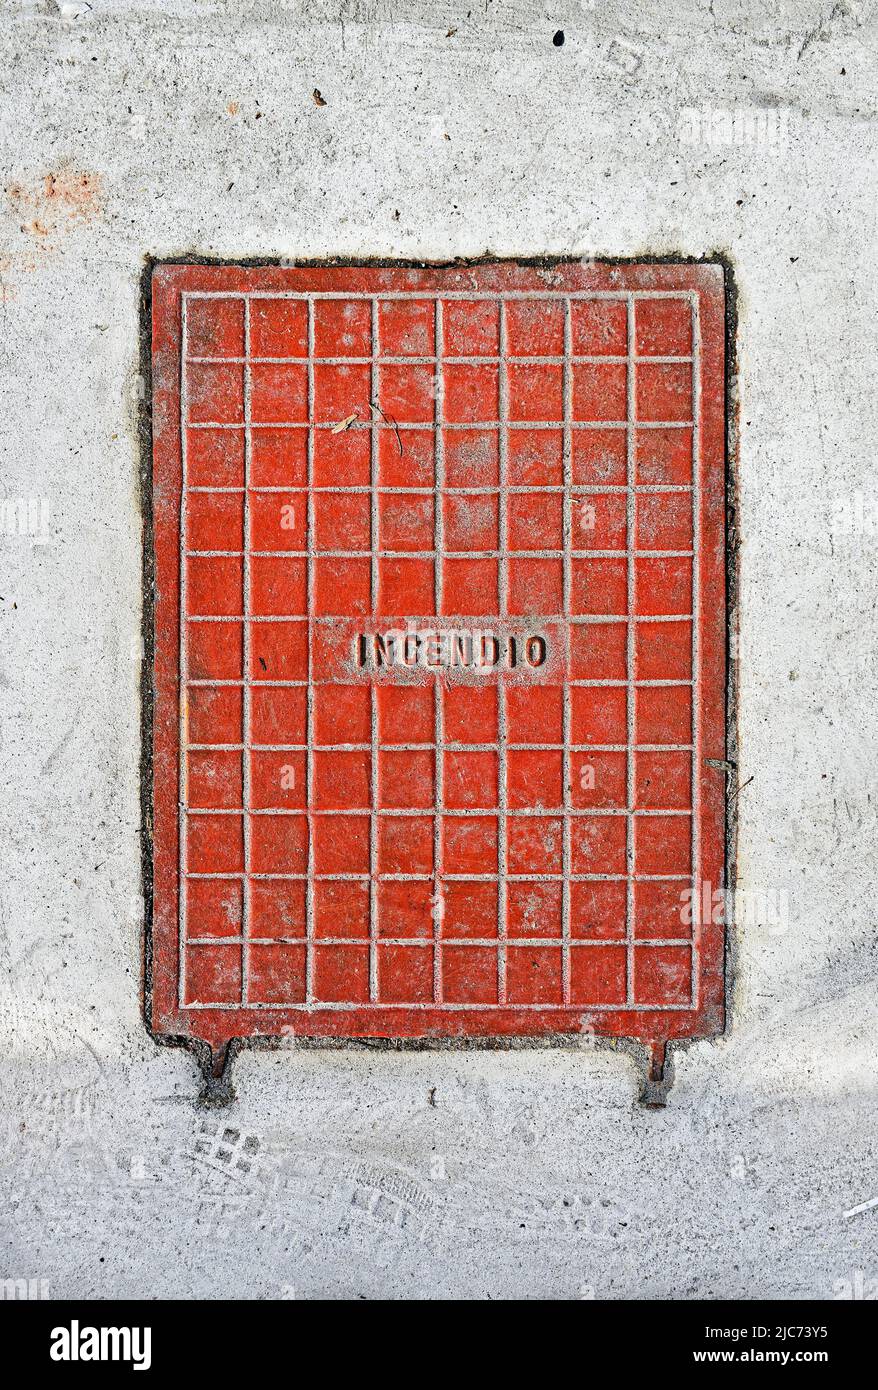 Surface métallique pour l'accès au système hydraulique contre le feu avec le mot portugais signifiant FEU (Incendio) Banque D'Images